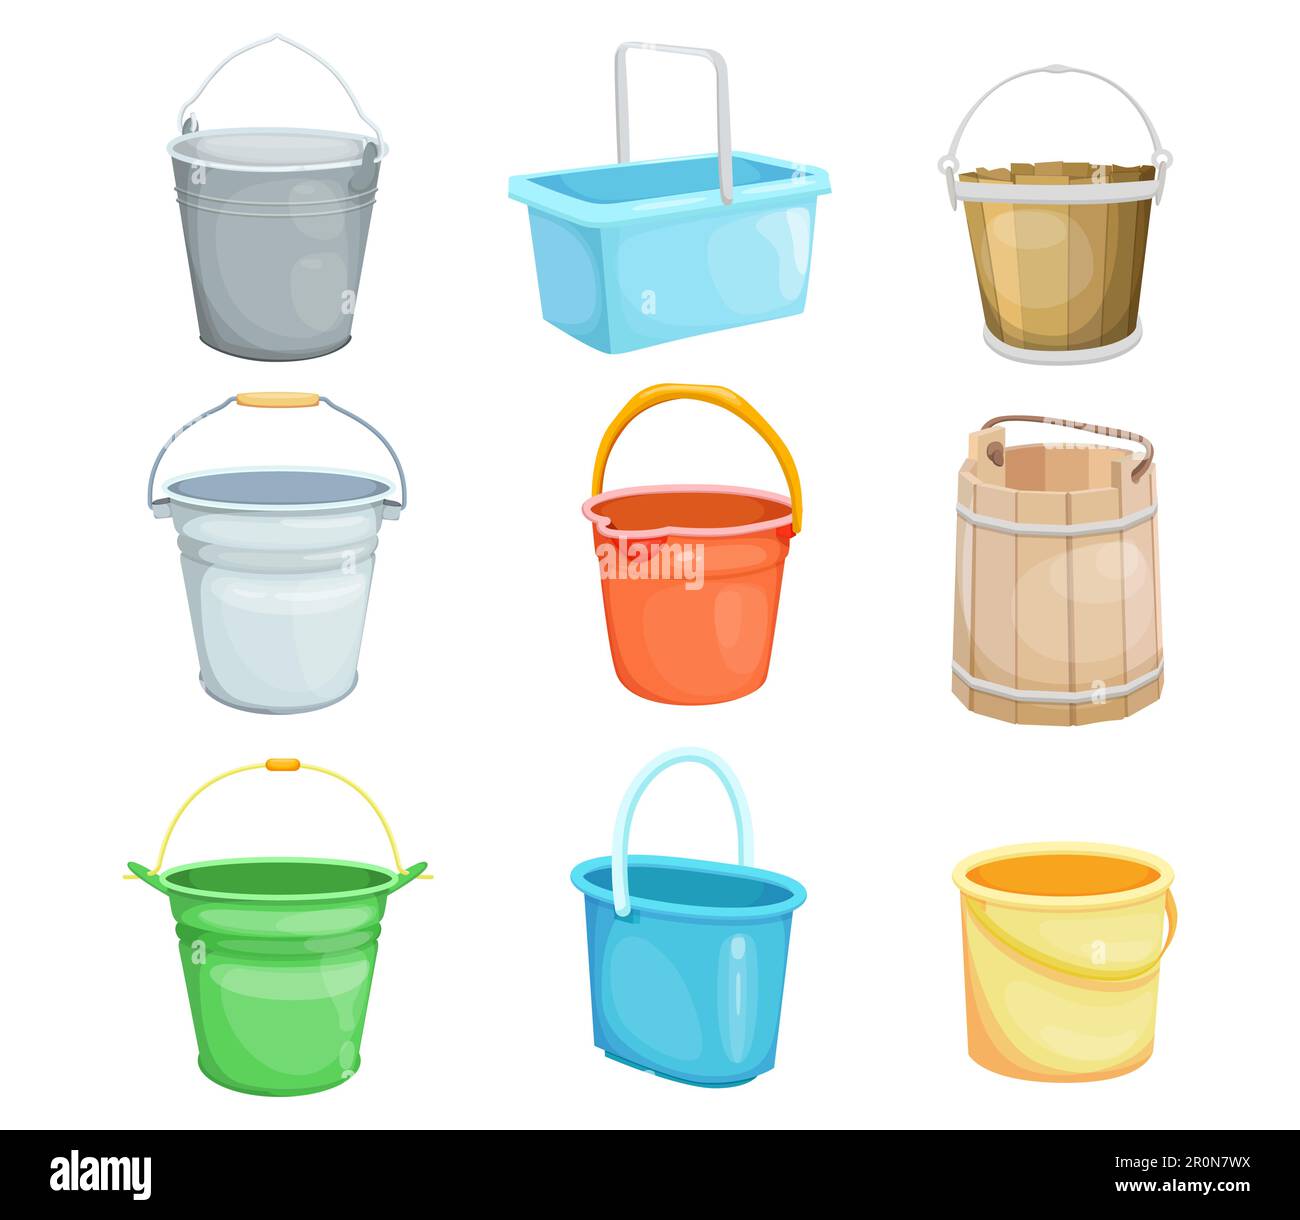 Buckets vector illustrations set Stock Vector